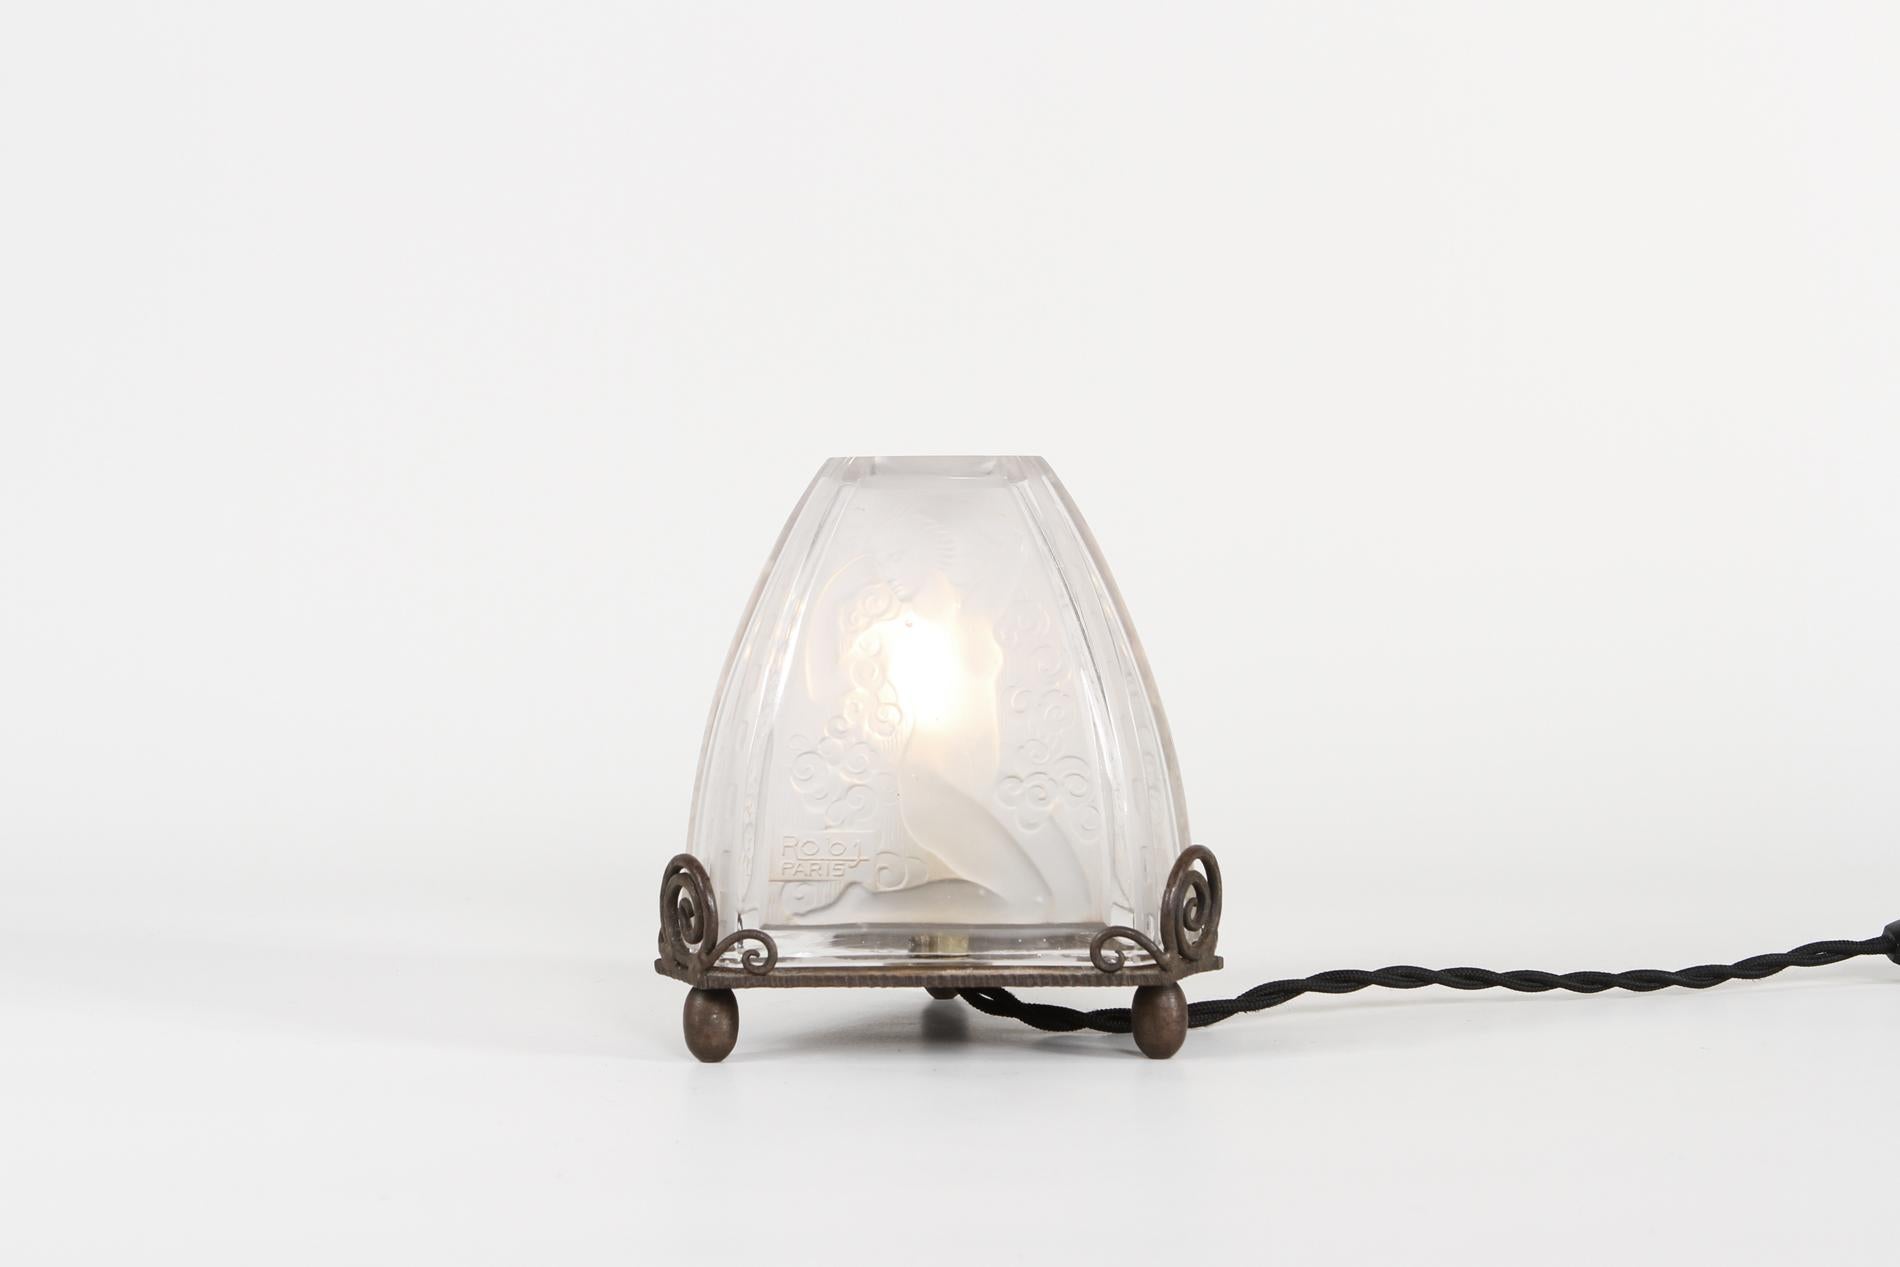 Originale petite lampe de table de nuit Art Déco par ROBJ signée sur le verre, à l'époque elle servait aussi de brumisateur de parfum. La même pièce figure également à l'intérieur de 